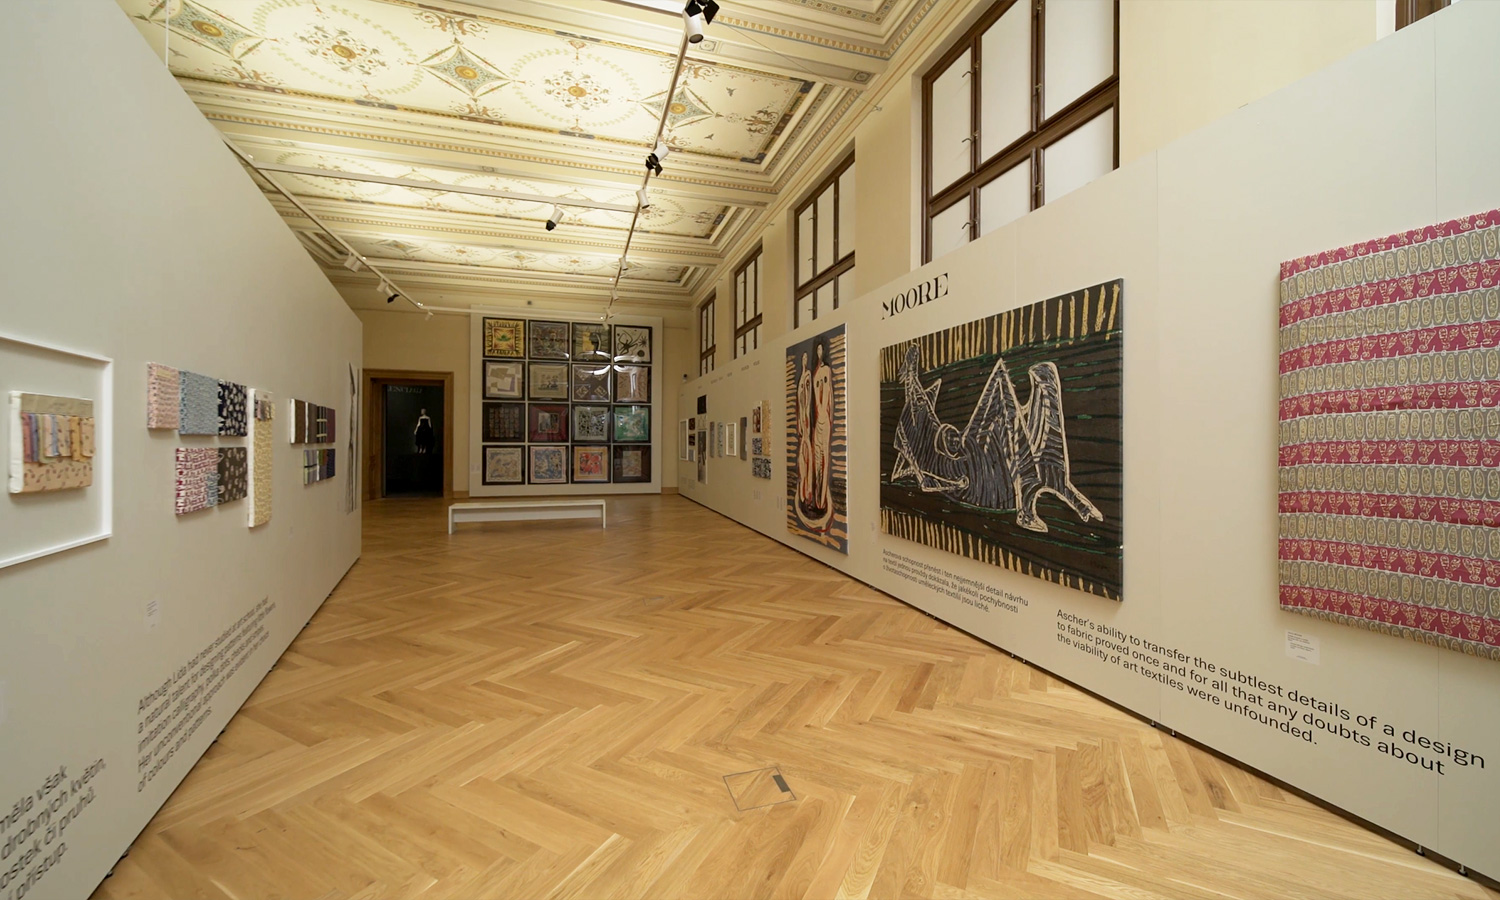 Ausstellungsraum mit Mila-wall Technik im Kunstgewerbemuseum in Prag